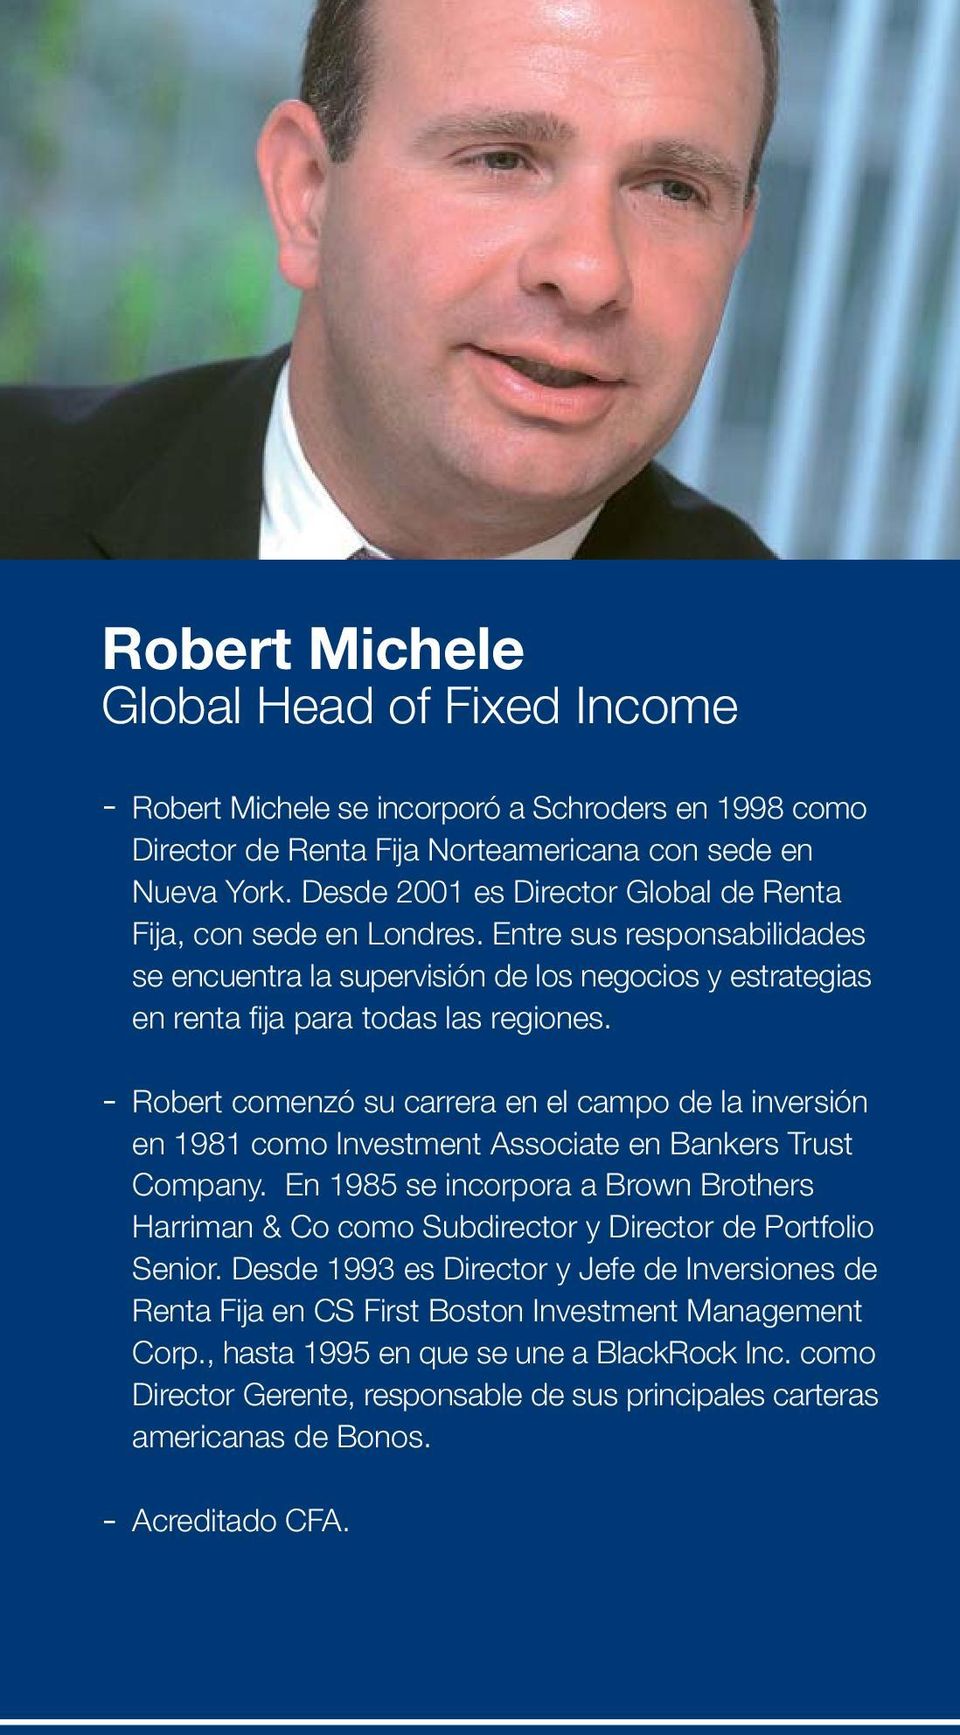 Robert comenzó su carrera en el campo de la inversión en 1981 como Investment Associate en Bankers Trust Company.